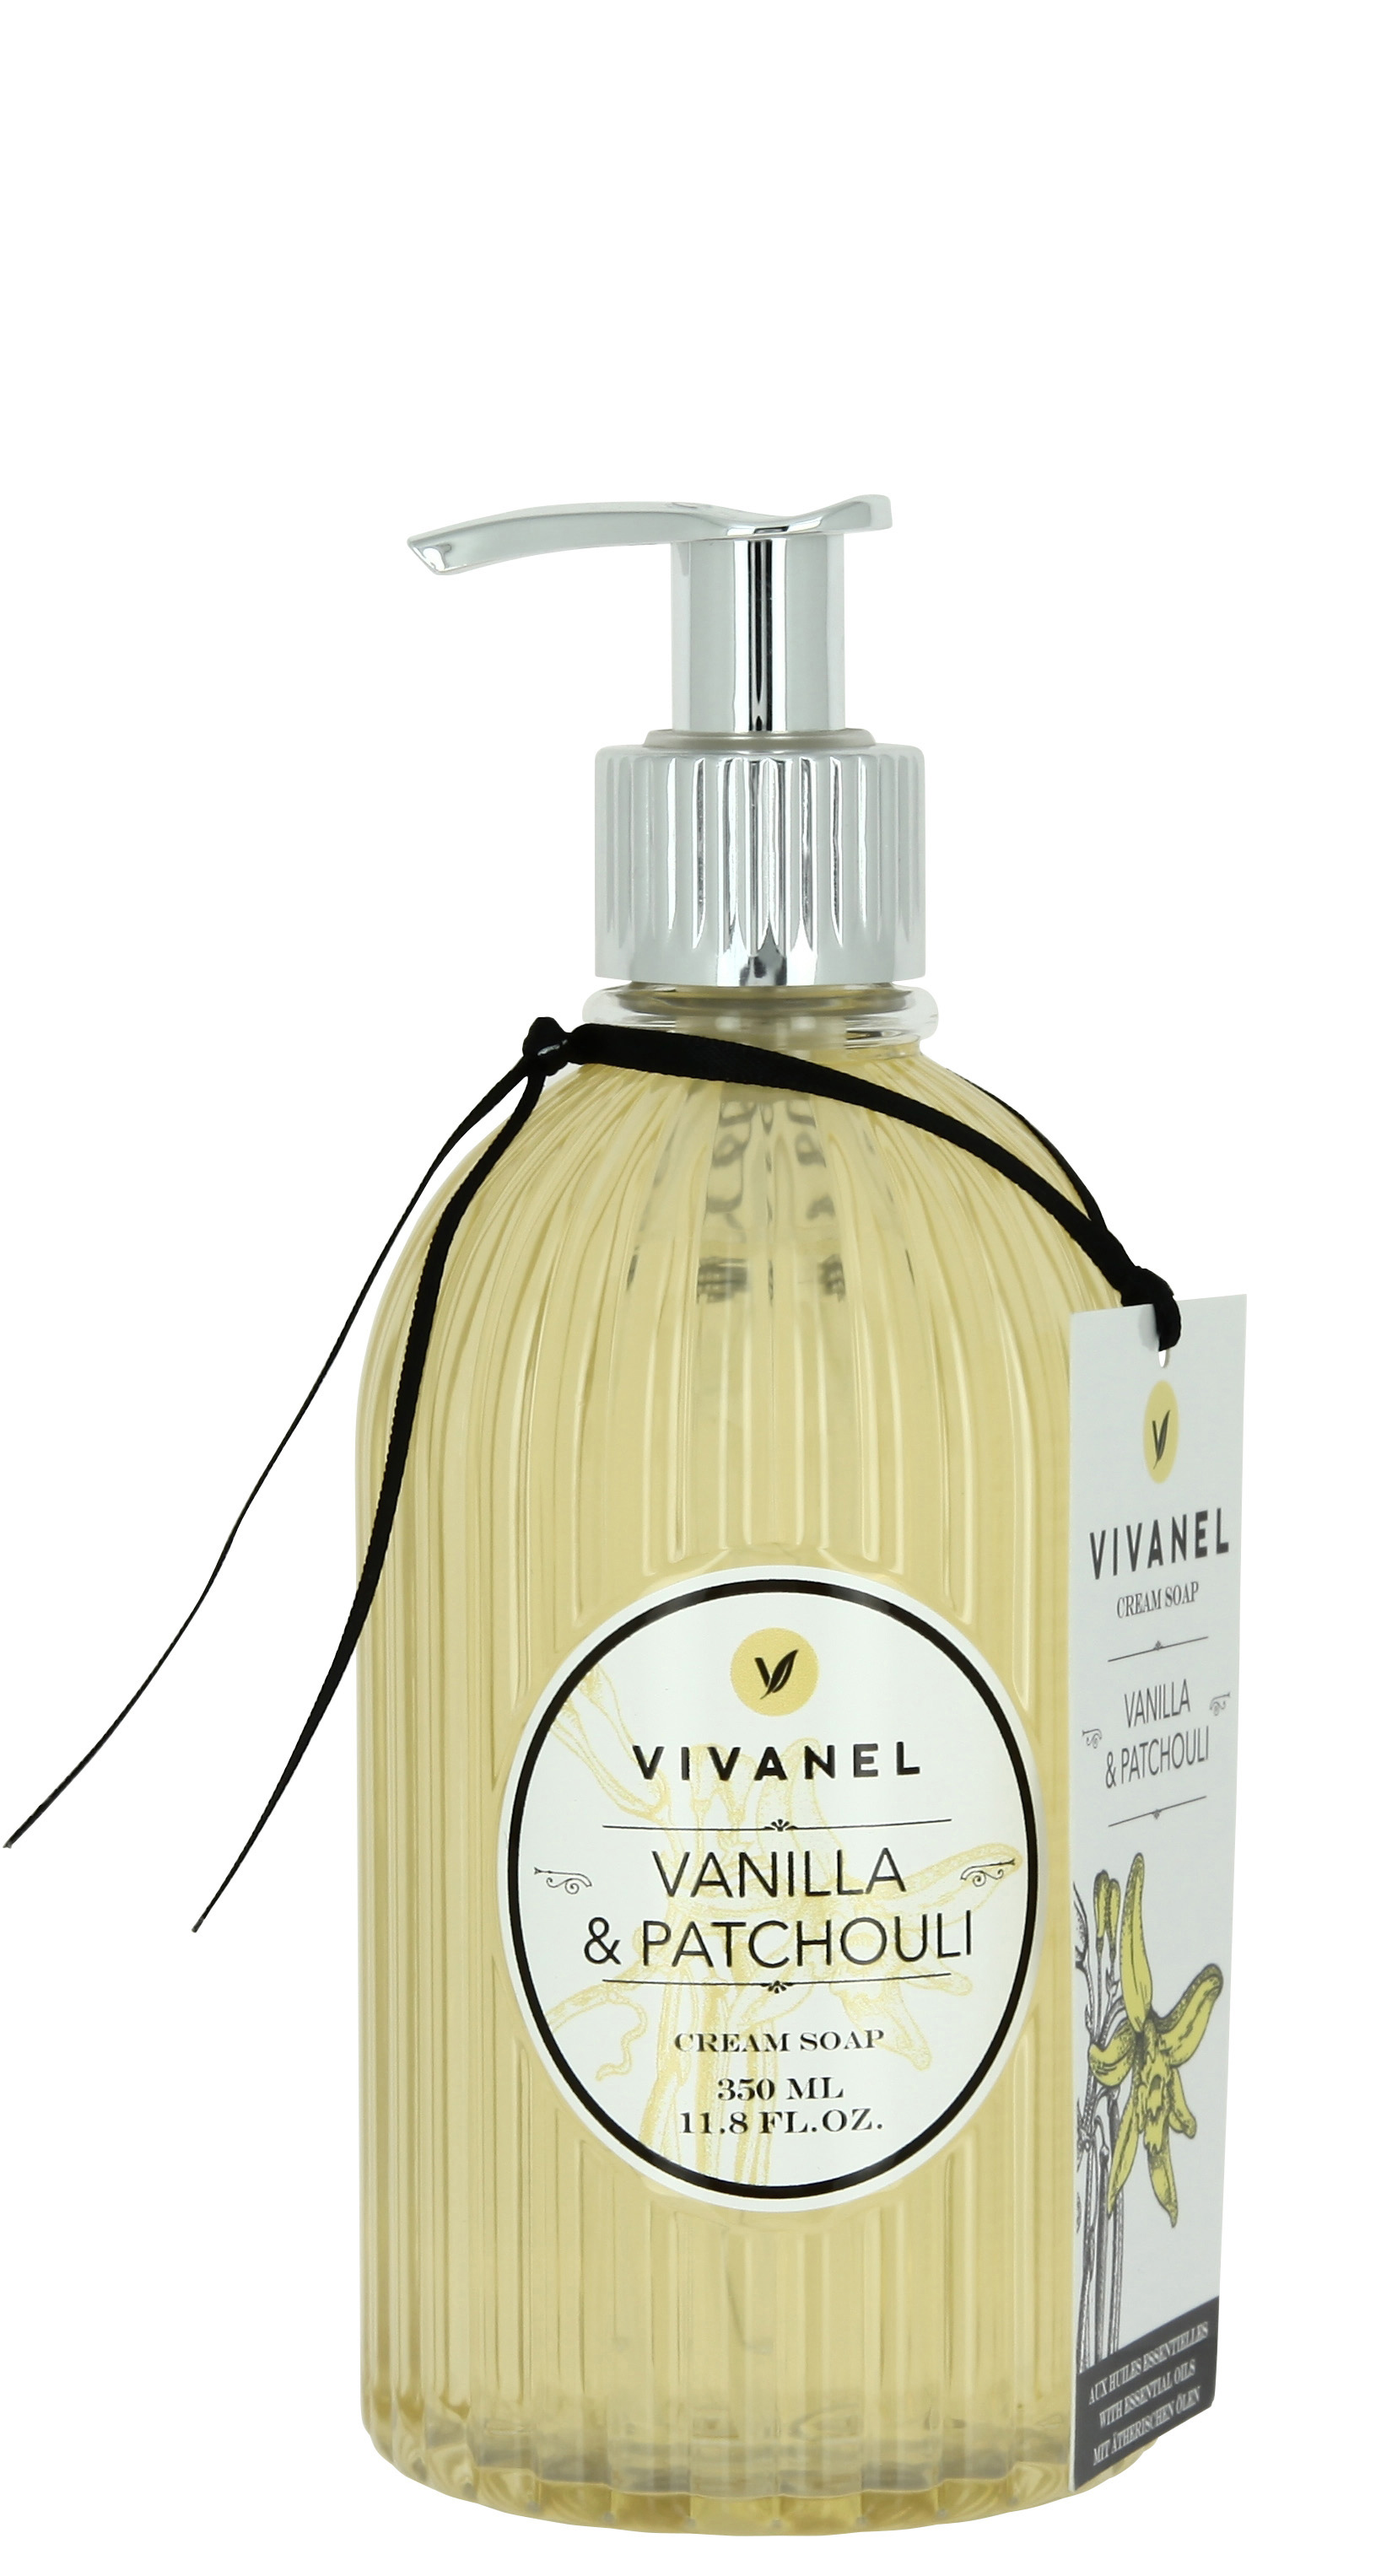 Vivian Gray Krémové tekuté mýdlo na ruce Vanille & Patchouli (Cream Soap) 350 ml